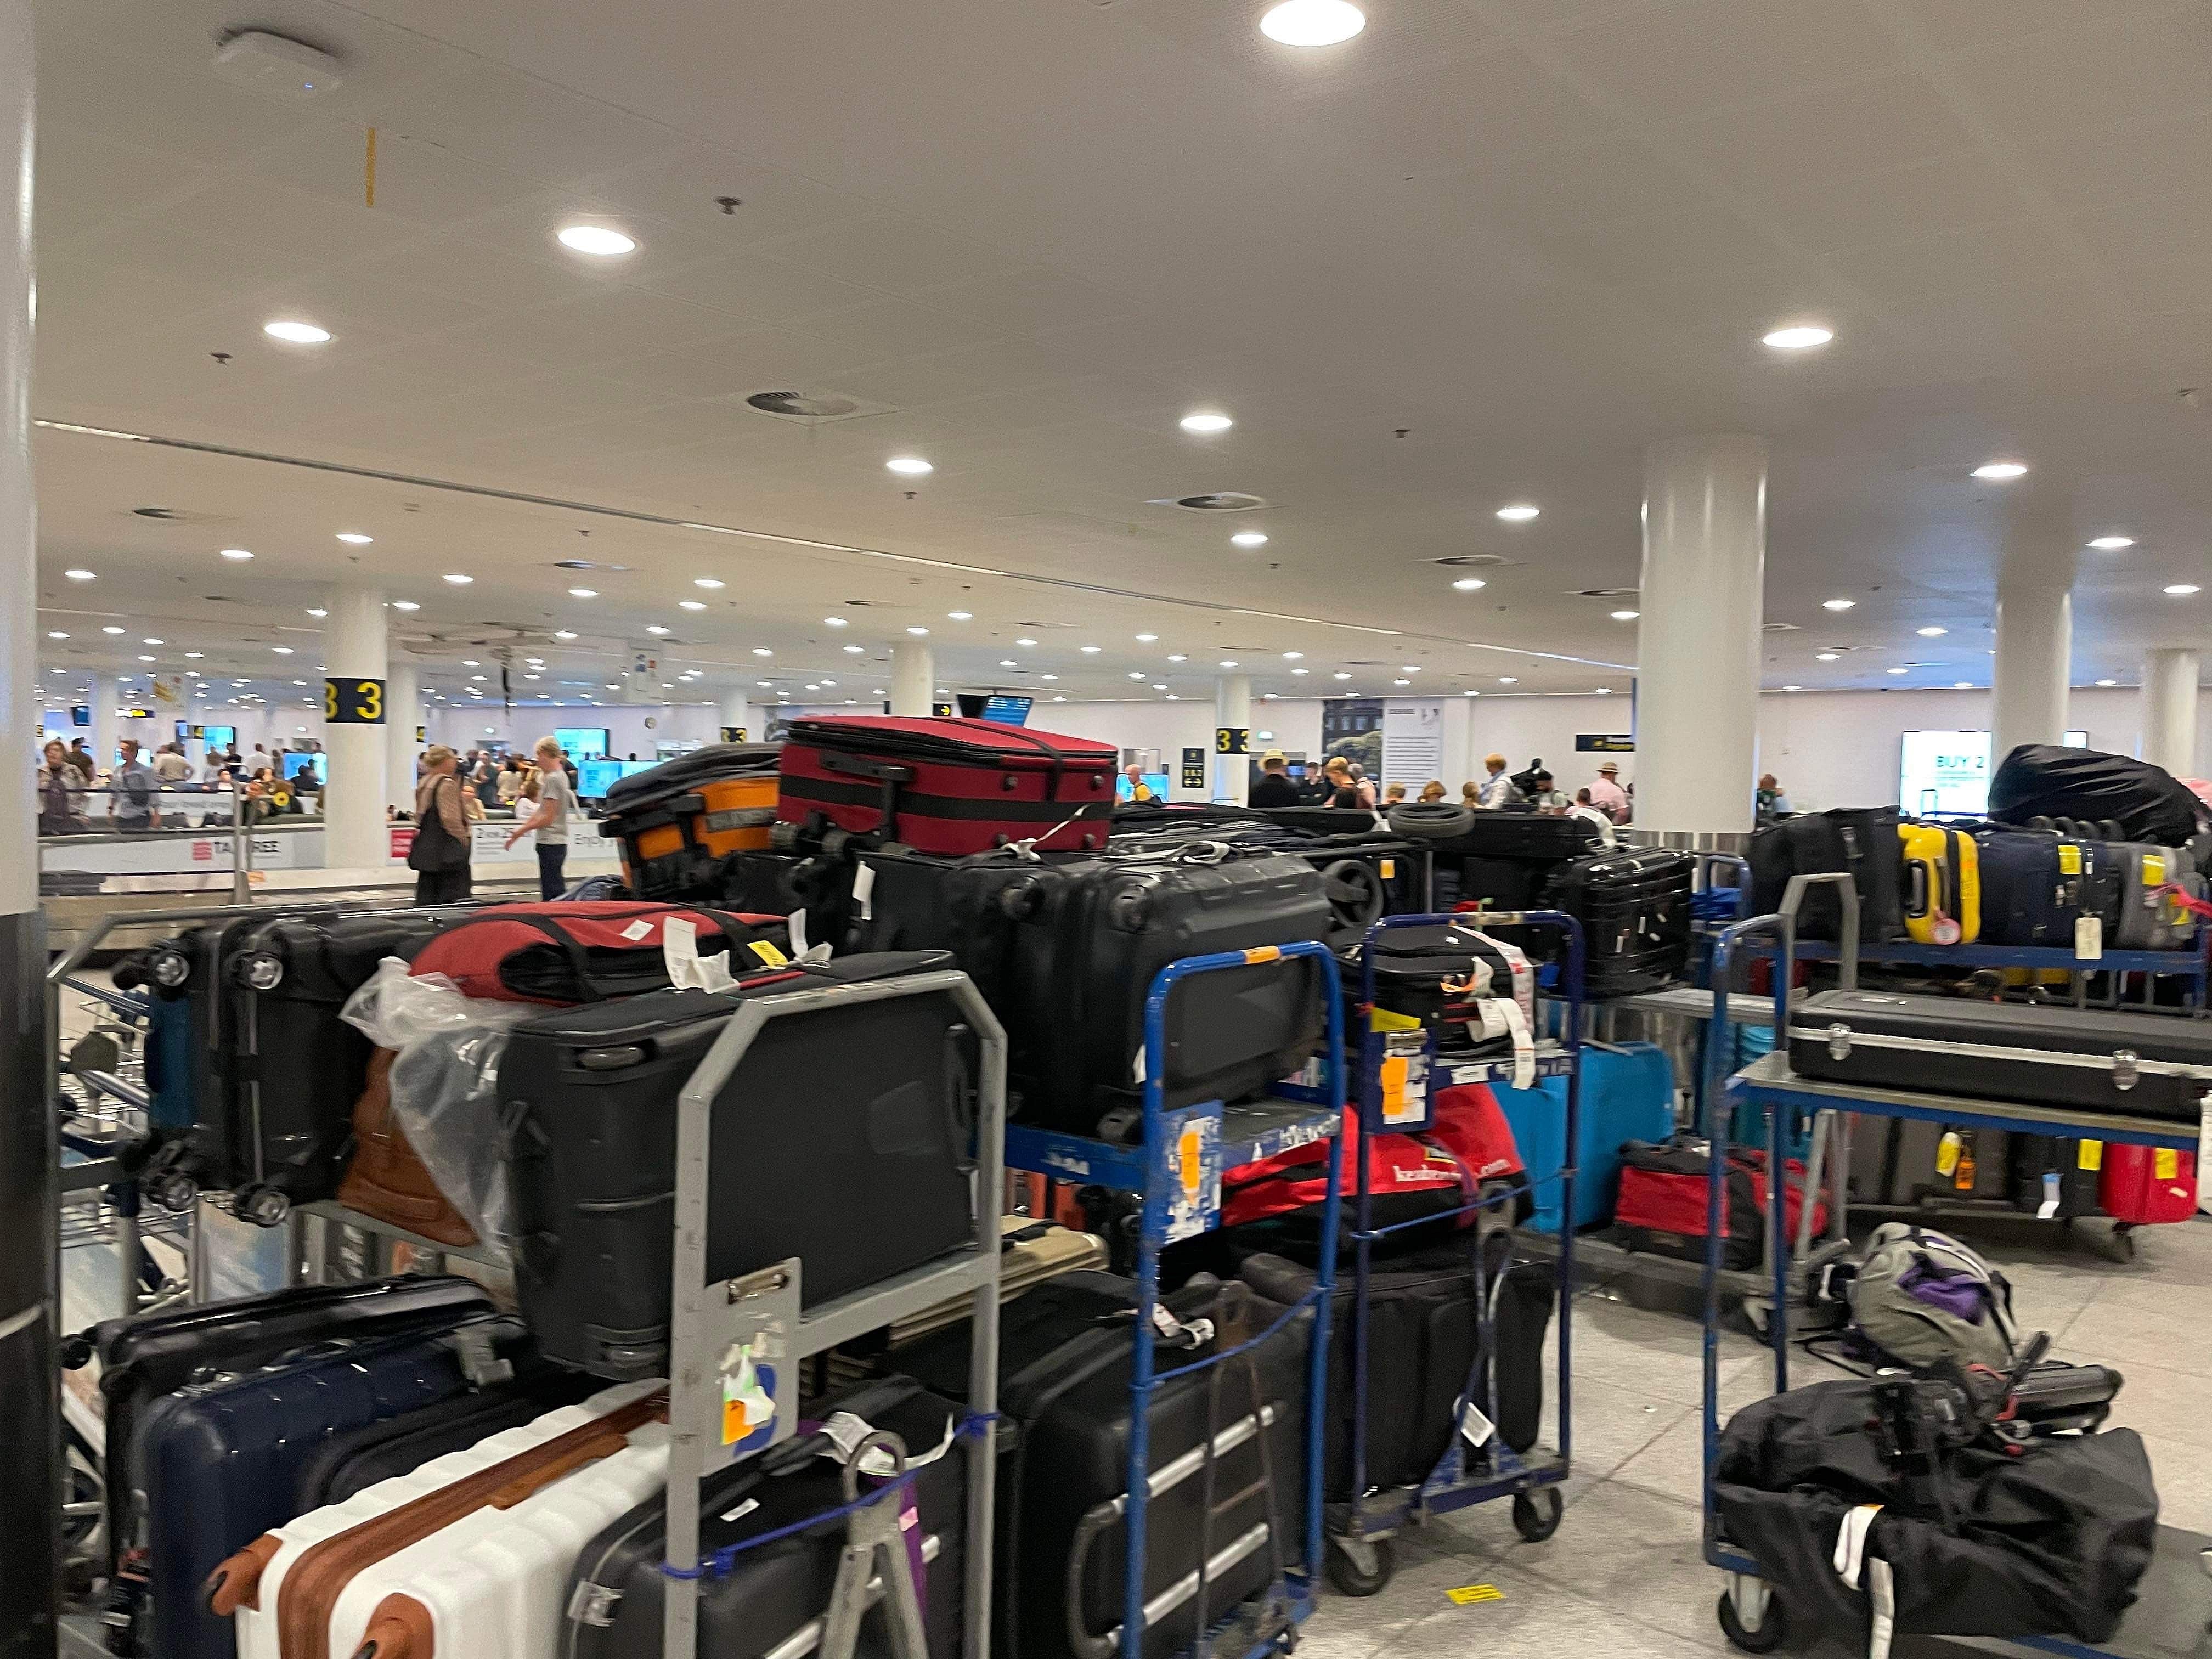 Har du også undret dig? Derfor det med “efterladte” kufferter i lufthavnen | TV 2 Kosmopol